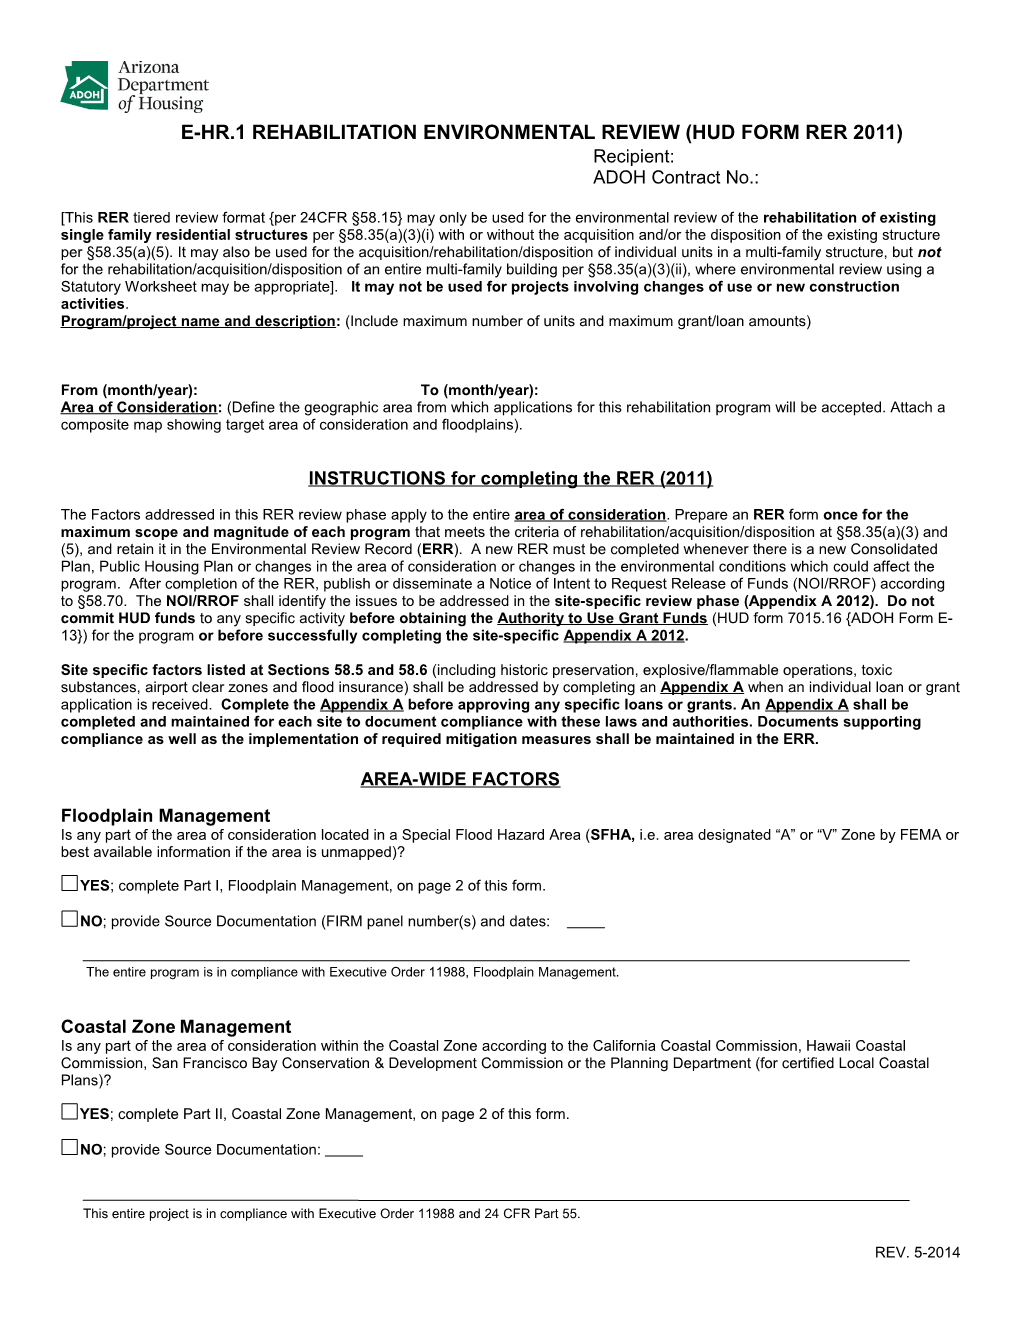 E-HR.1 Rehabilitation Environmental Review (HUD Form RER 2011)